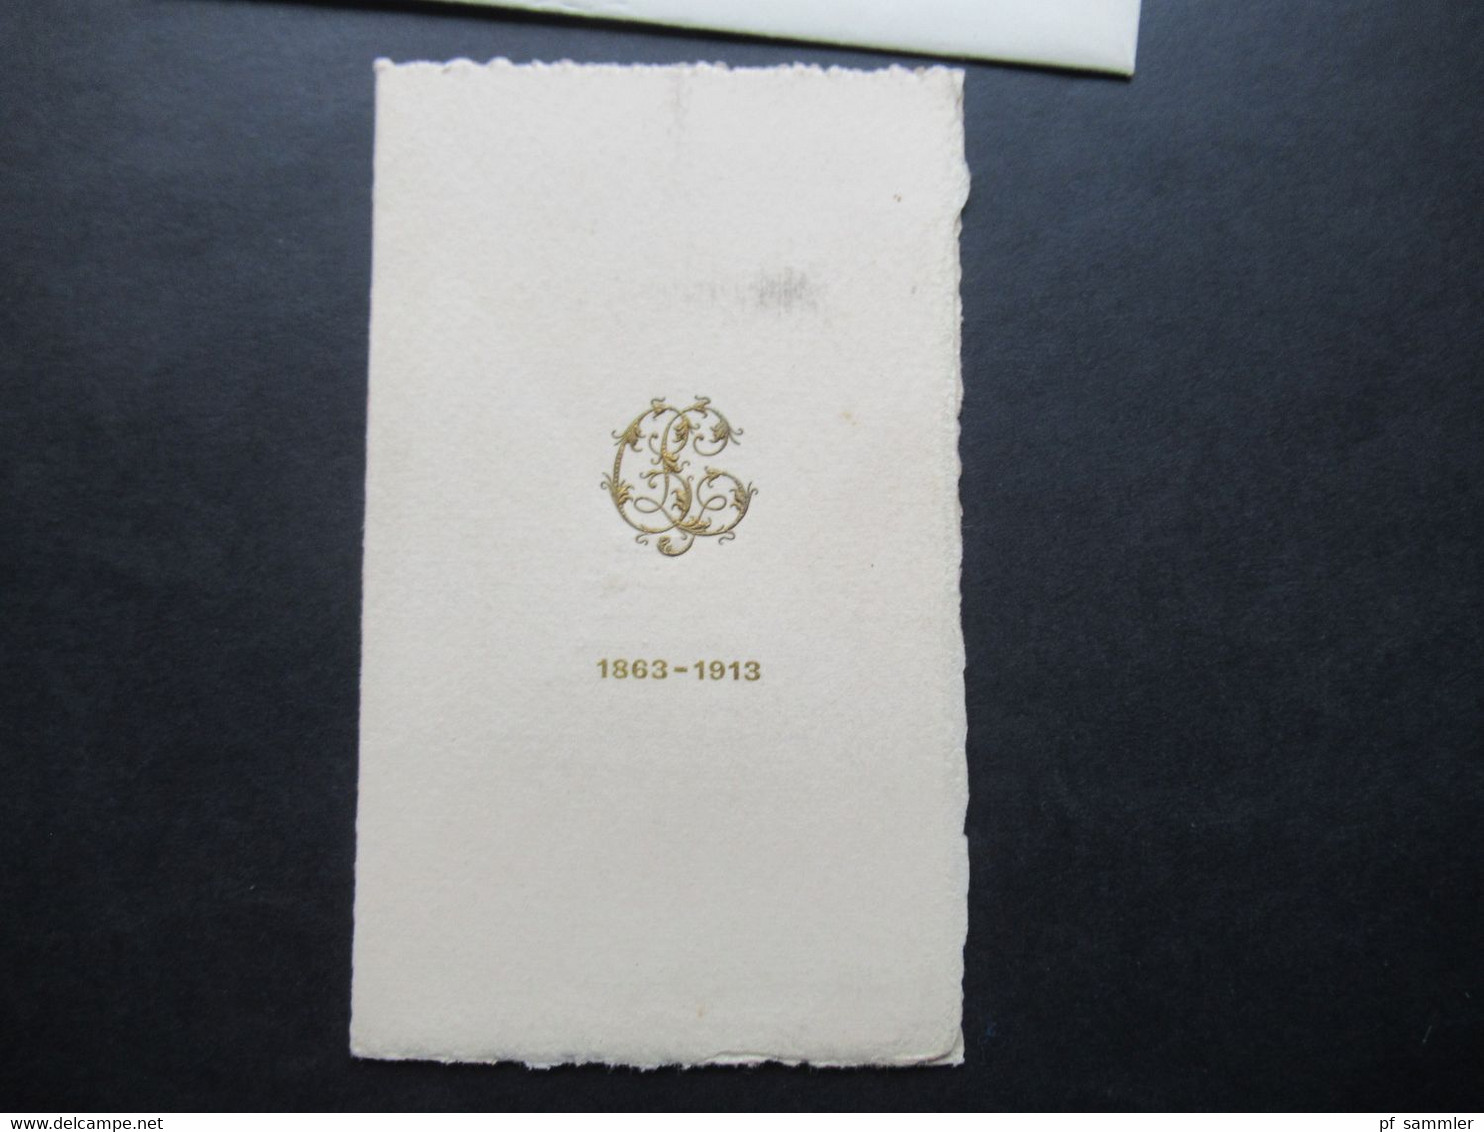 Frankreich 1863 - 1913 Einladungskarte Menu Du Diner Chateau De Madrid Spreisekarte / Weinkarte Moet & Chandon 1863 - Historische Dokumente